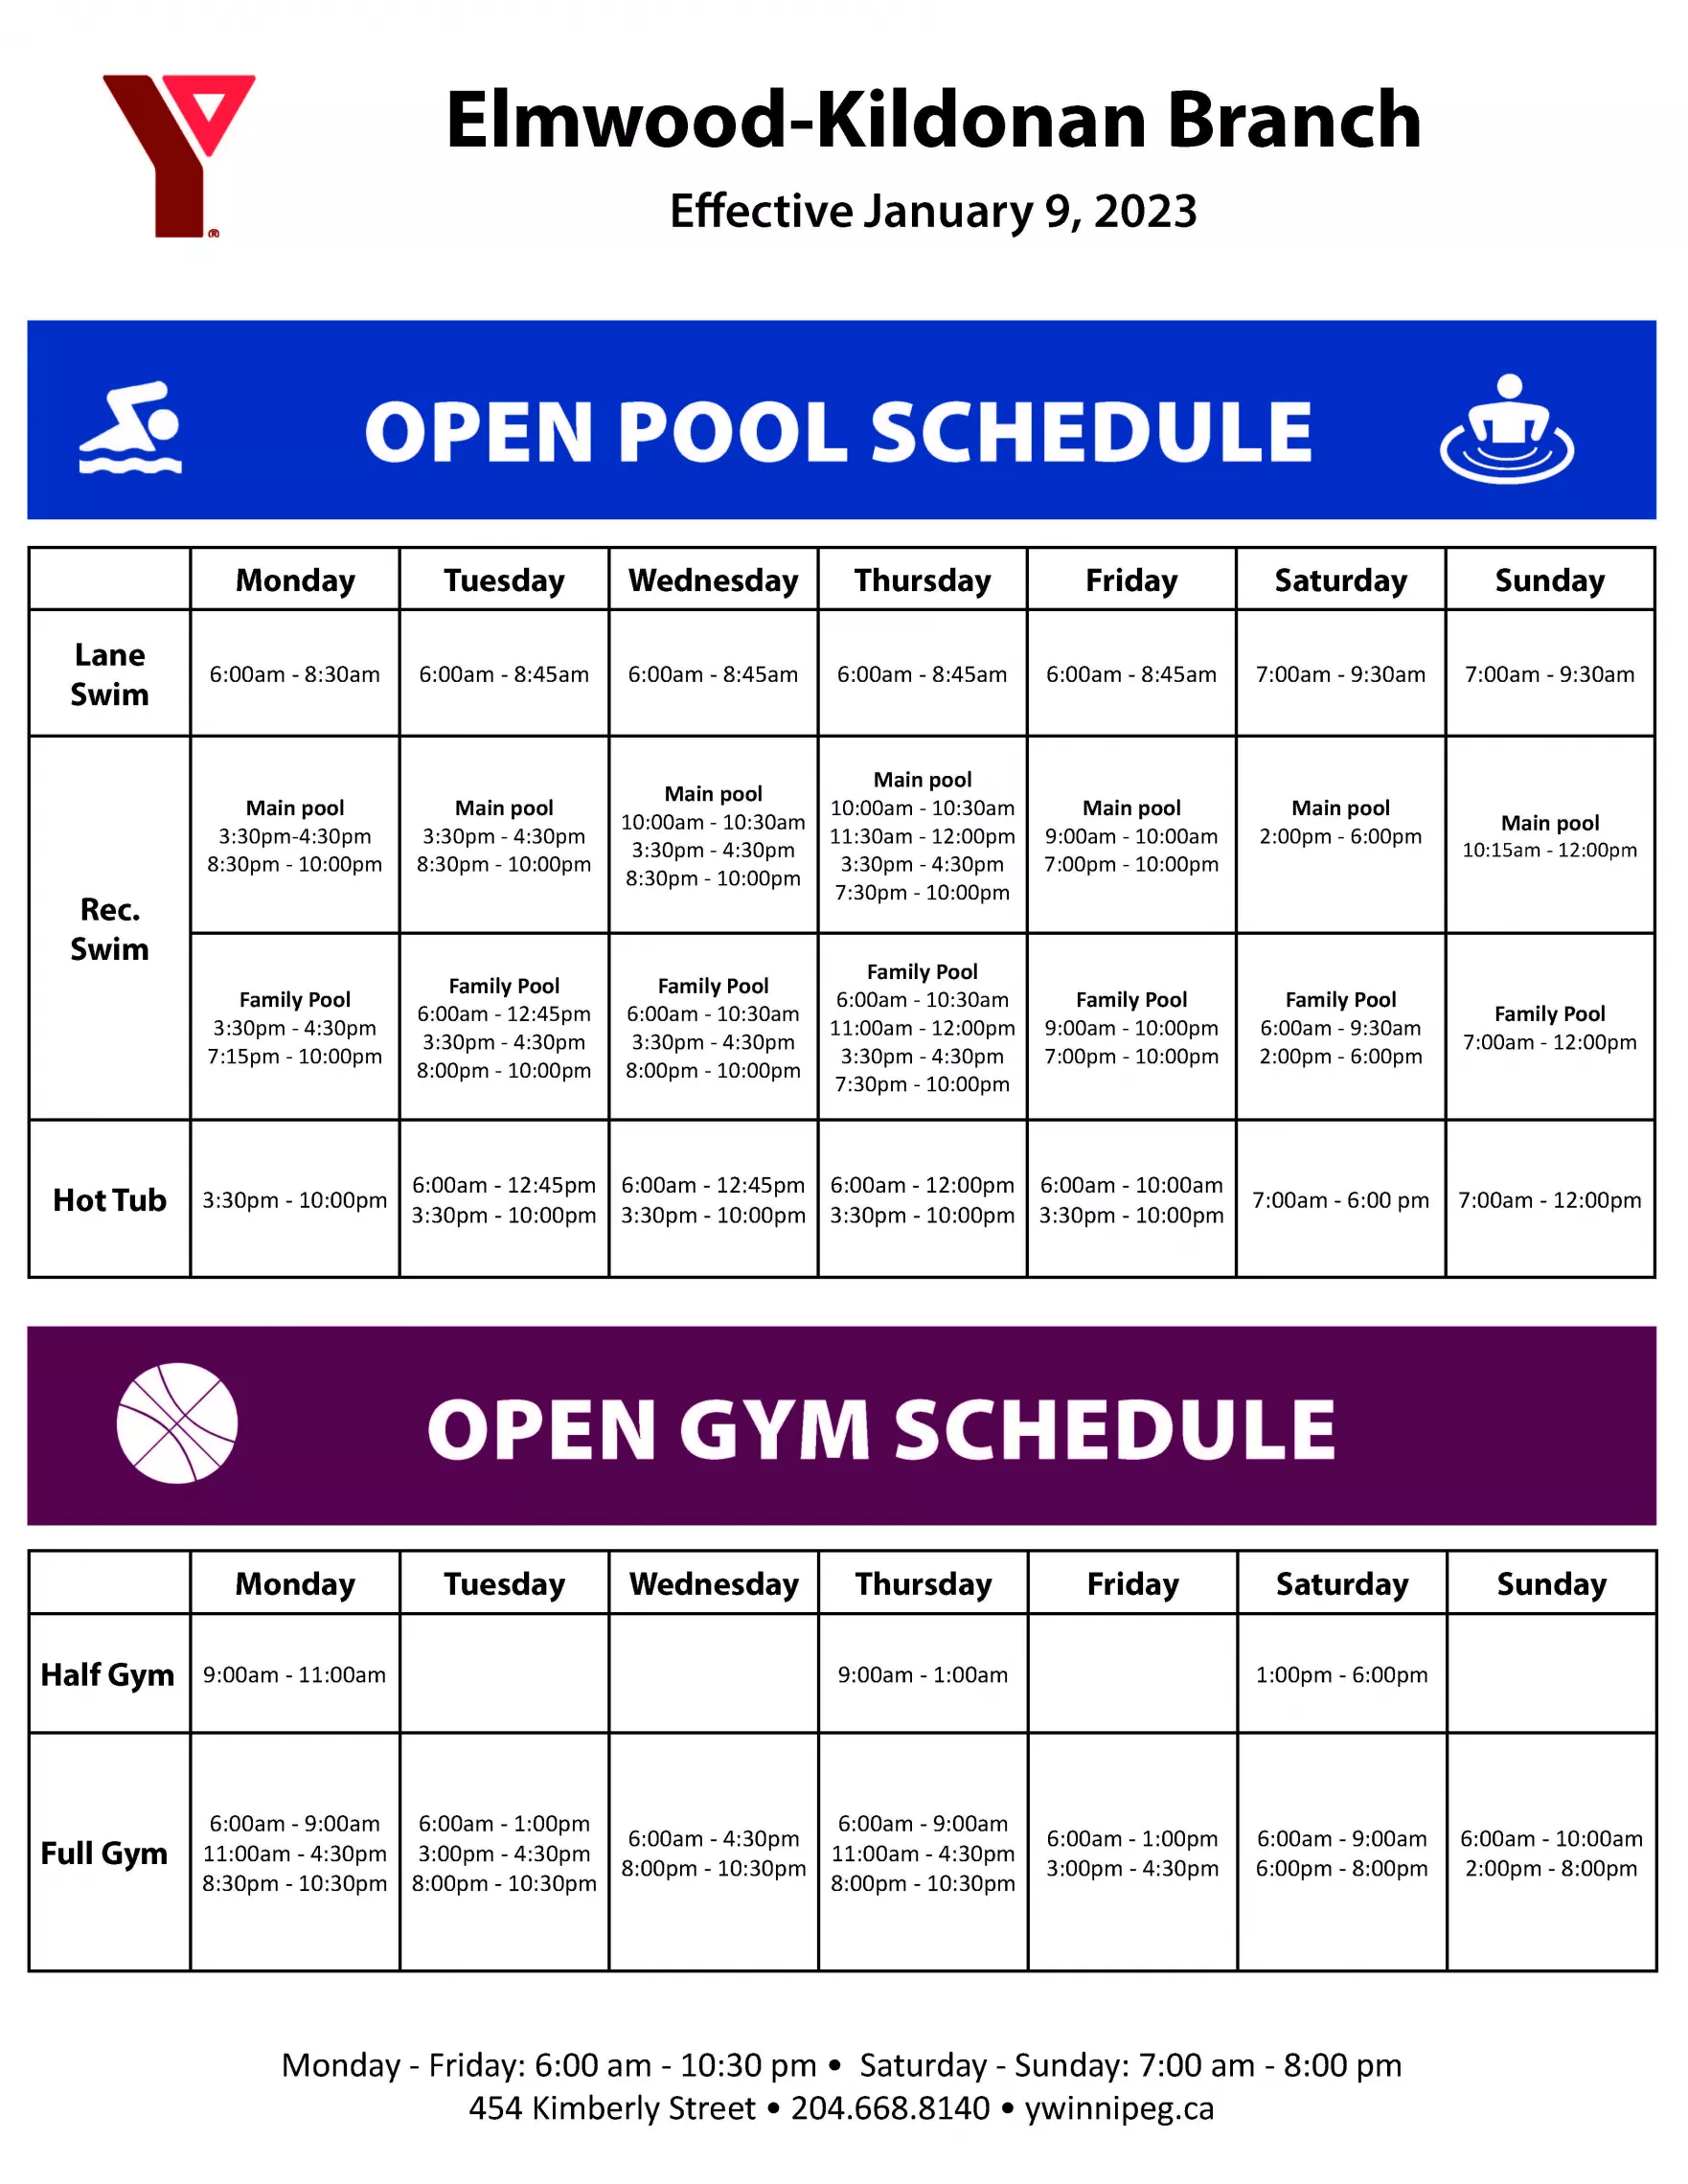 EK Open Gym and Pool Schedule